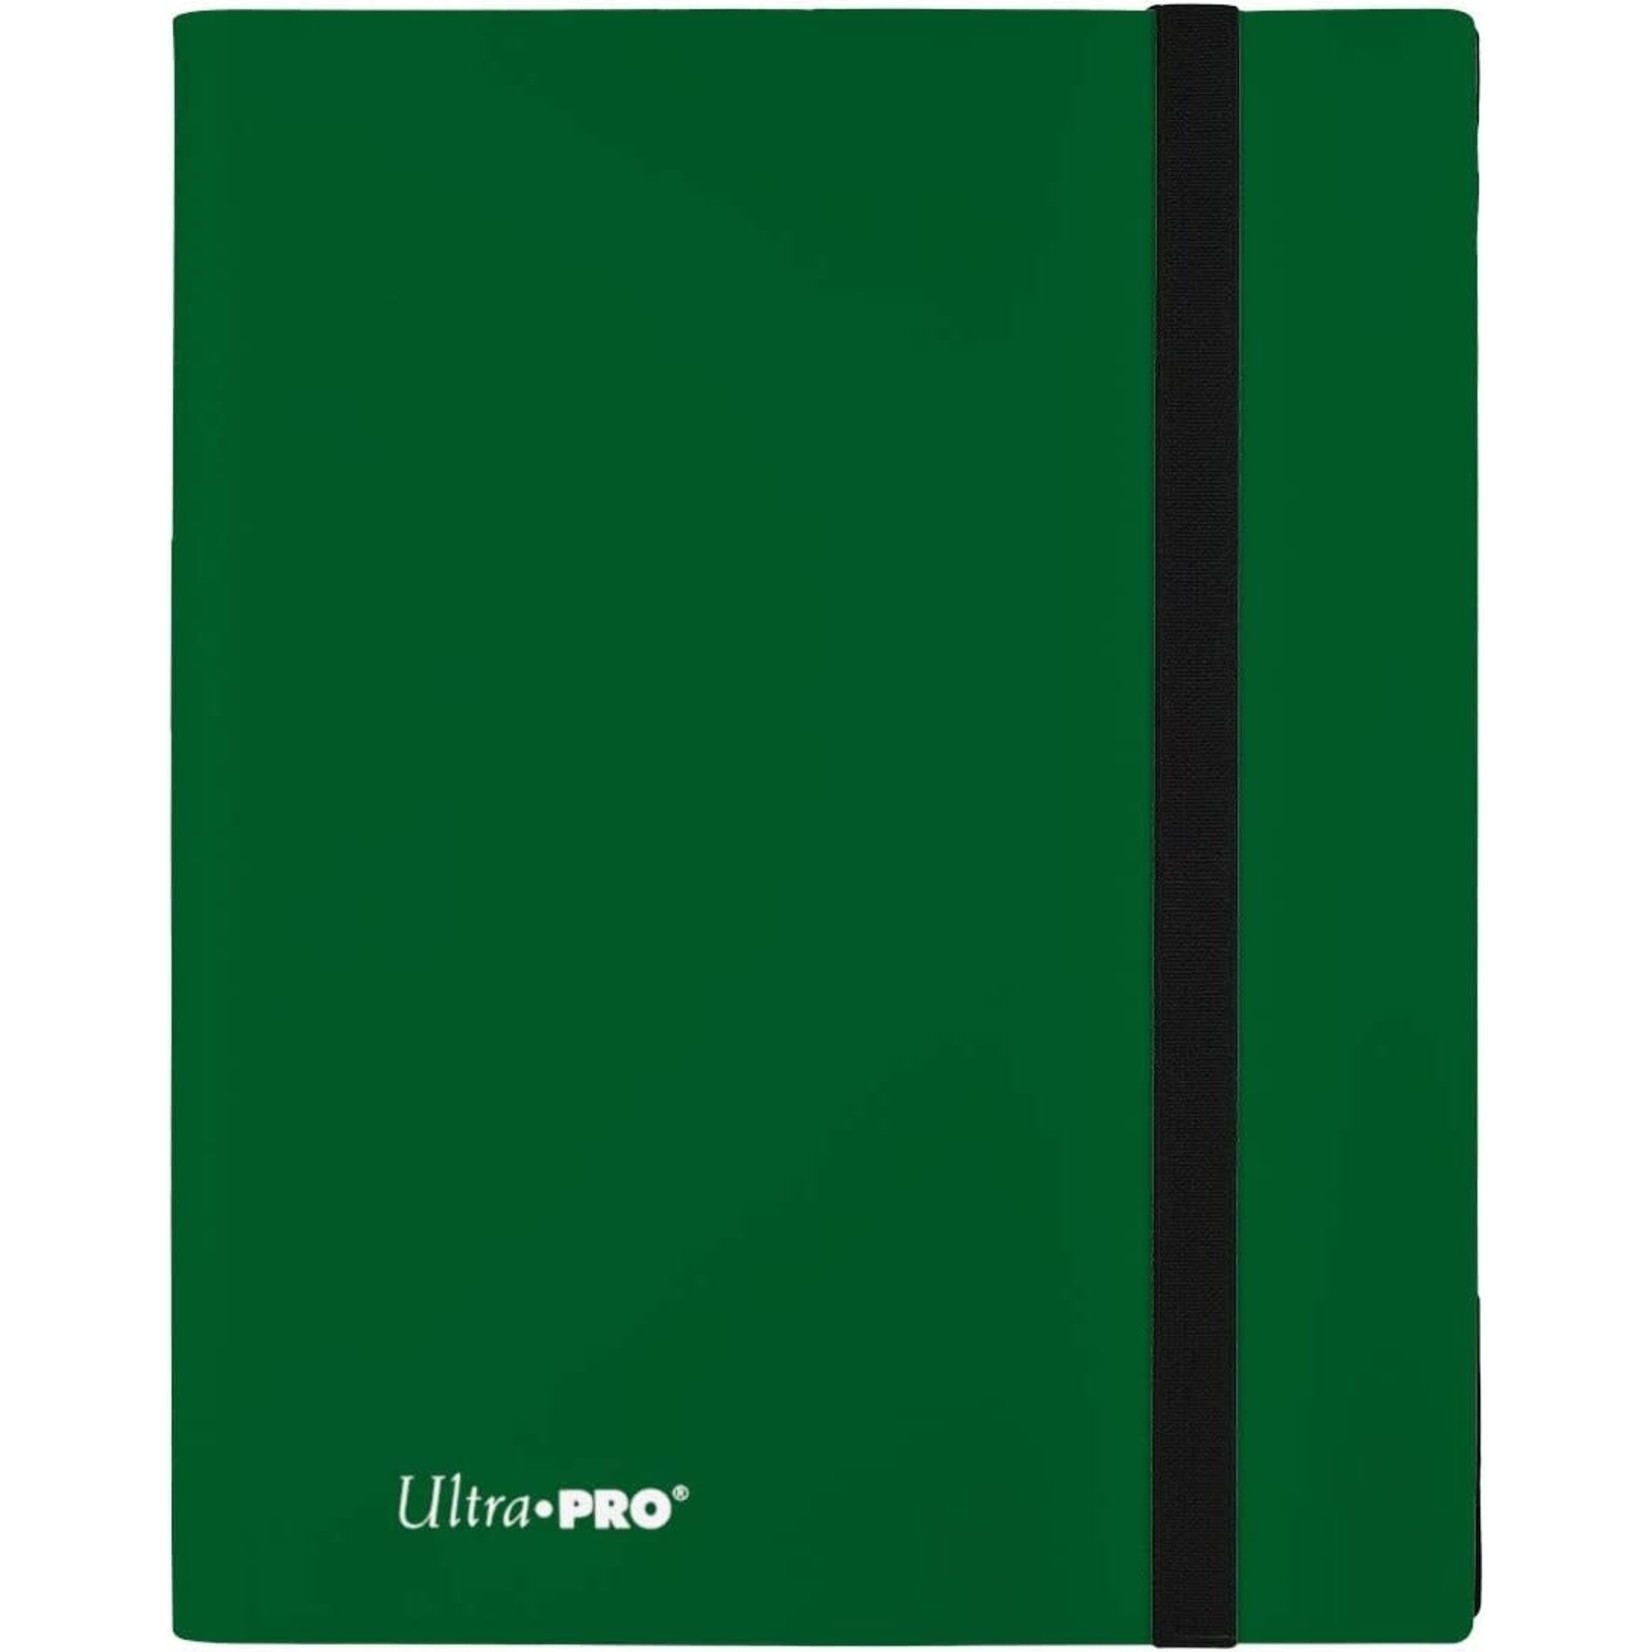 Ultra Pro 9-Pocket Binder (Forest Green)